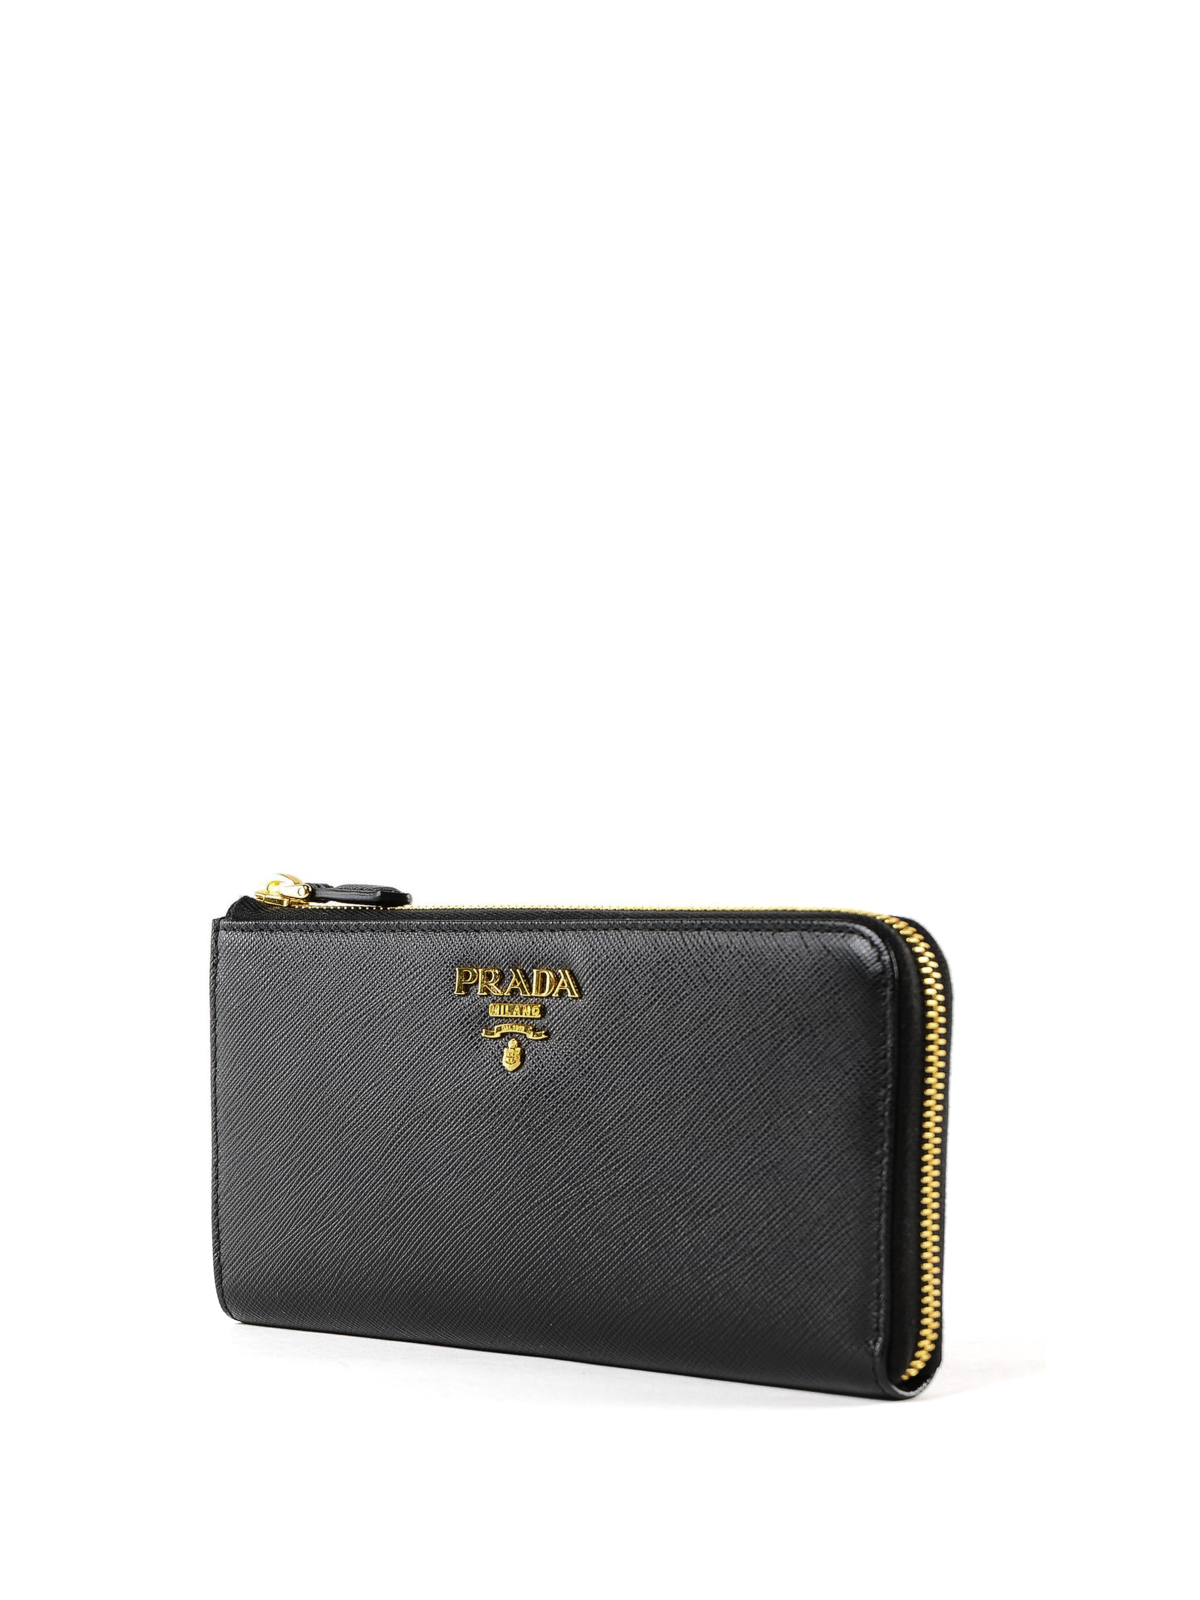 prada saffiano leather zip around wallet